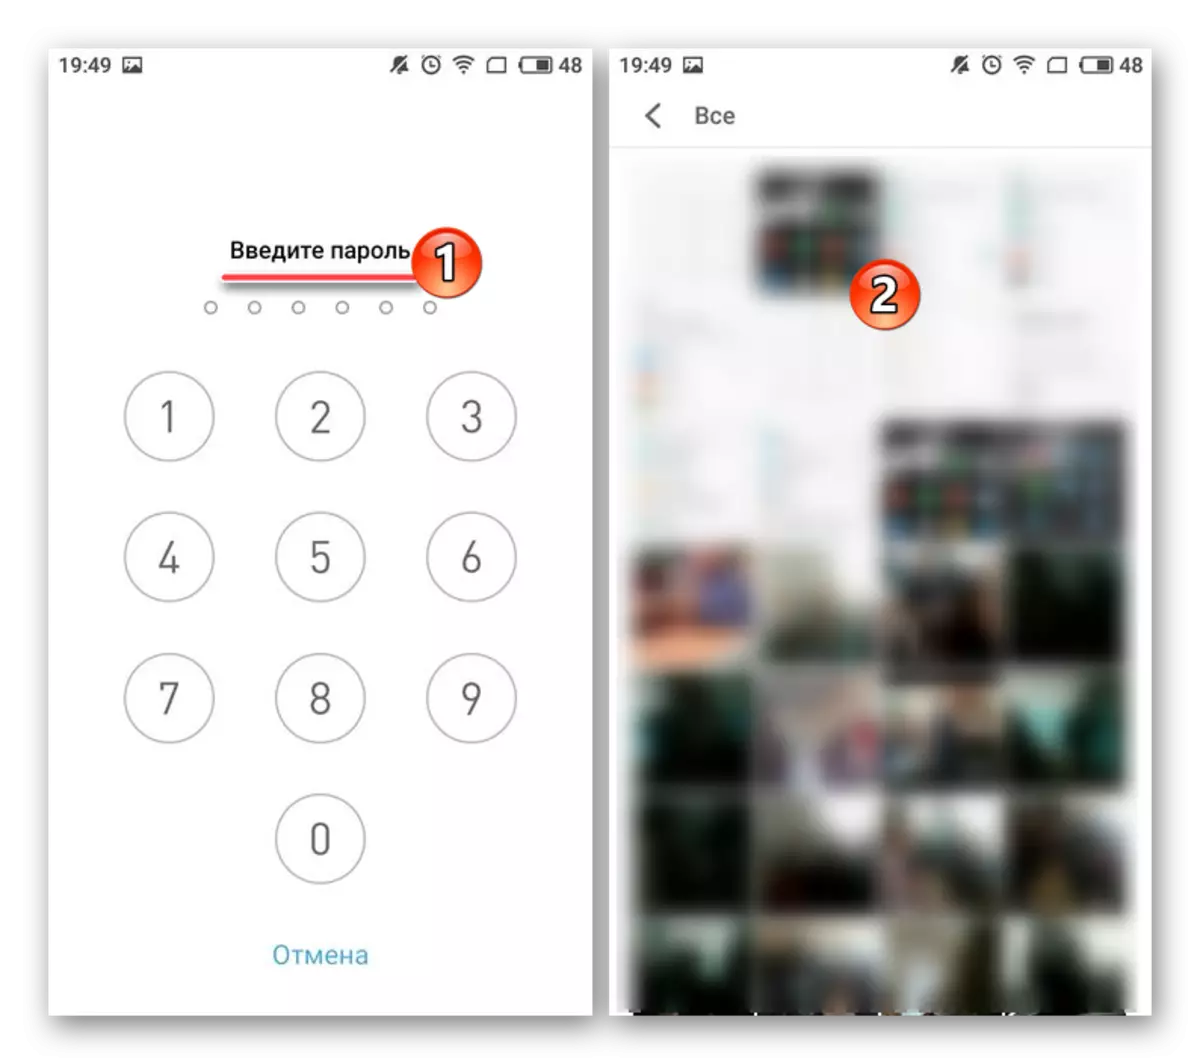 Inserindo uma senha para remover o bloqueio da galeria de aplicativos no Meizu Android Smartphone